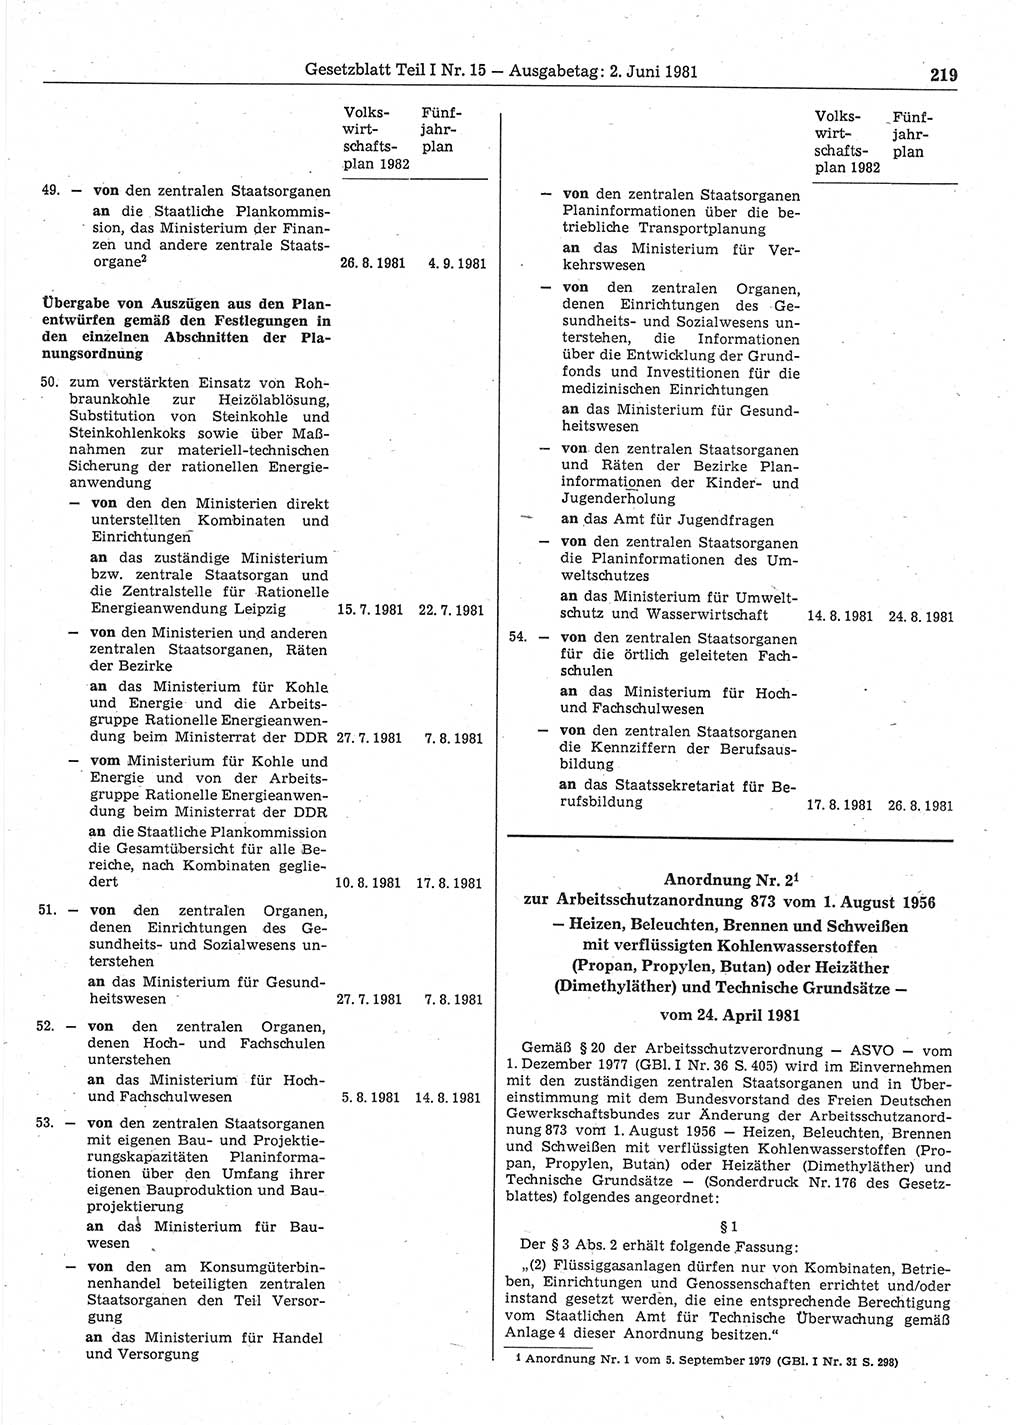 Gesetzblatt (GBl.) der Deutschen Demokratischen Republik (DDR) Teil Ⅰ 1981, Seite 219 (GBl. DDR Ⅰ 1981, S. 219)